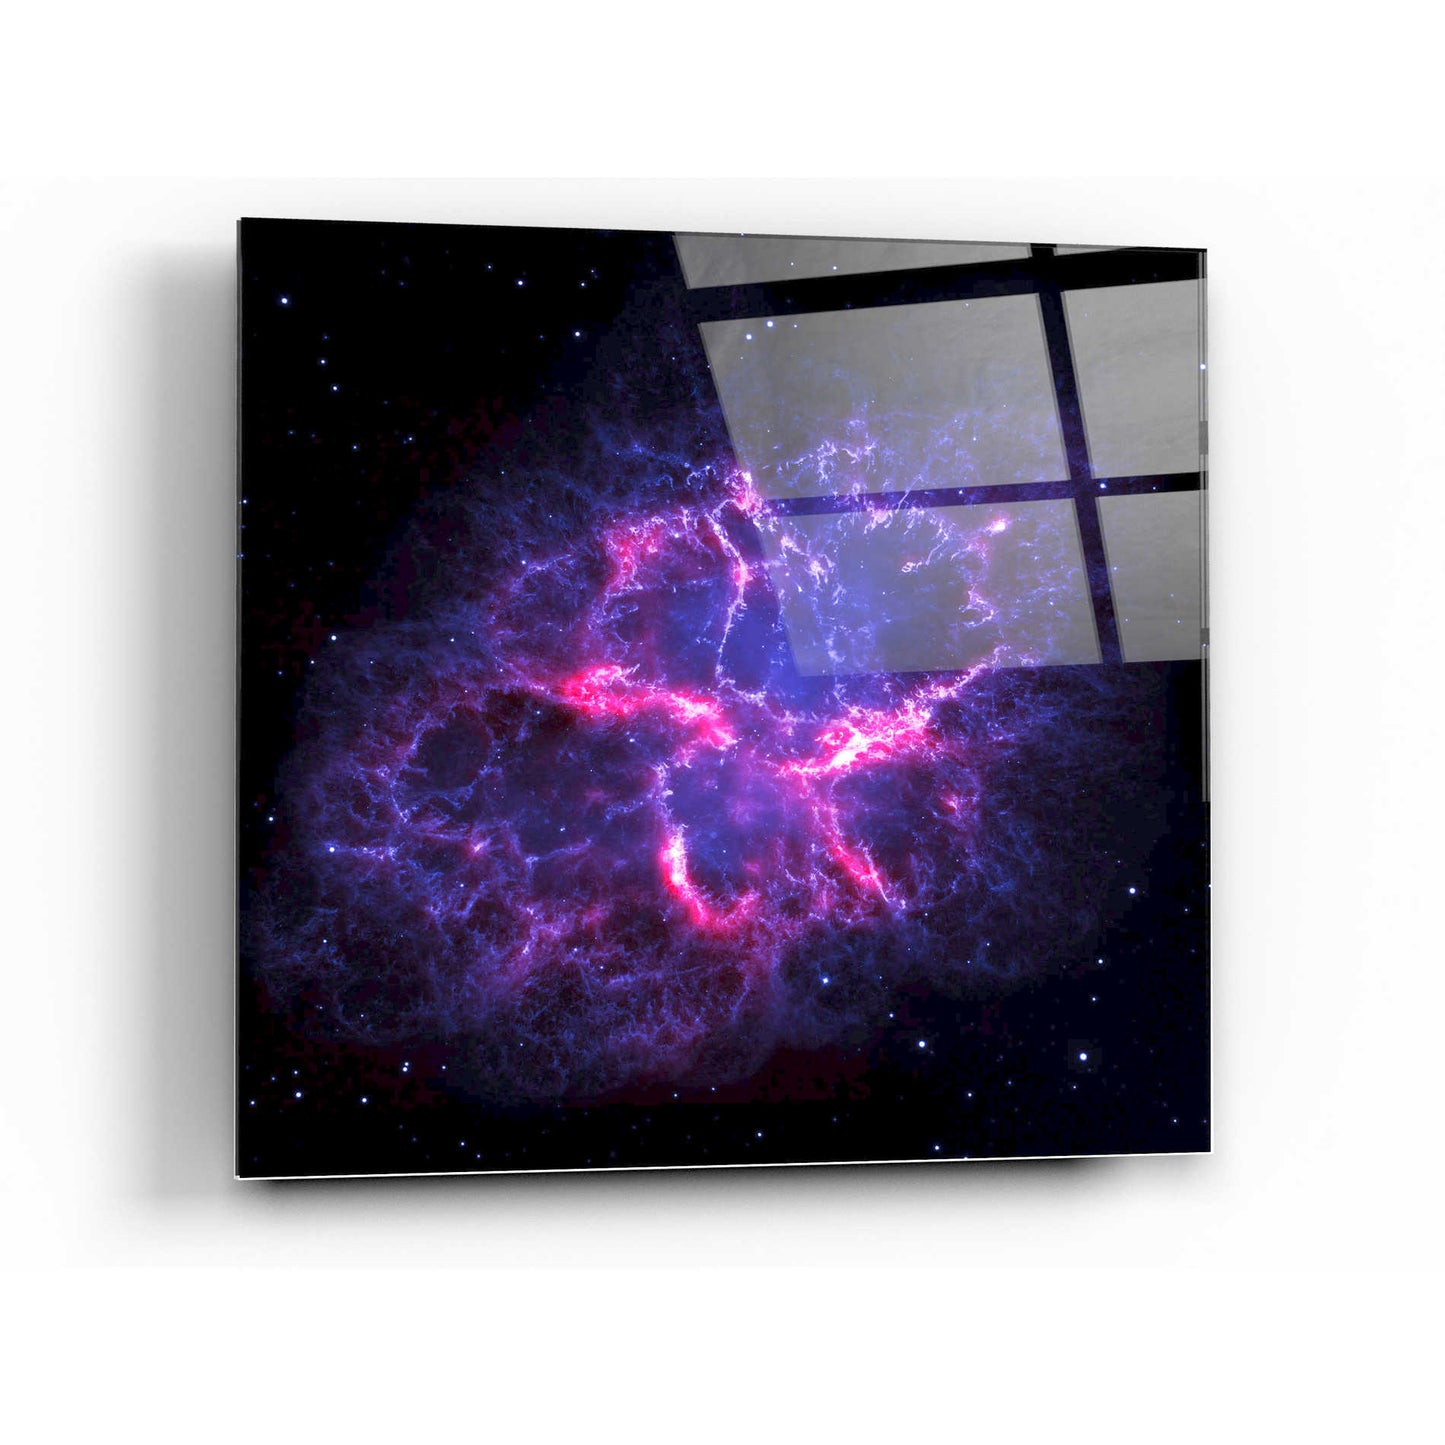 Epic Art "Crab Nebula" Hubble Space Telescope Acrylic Glass Wall Art,24x24